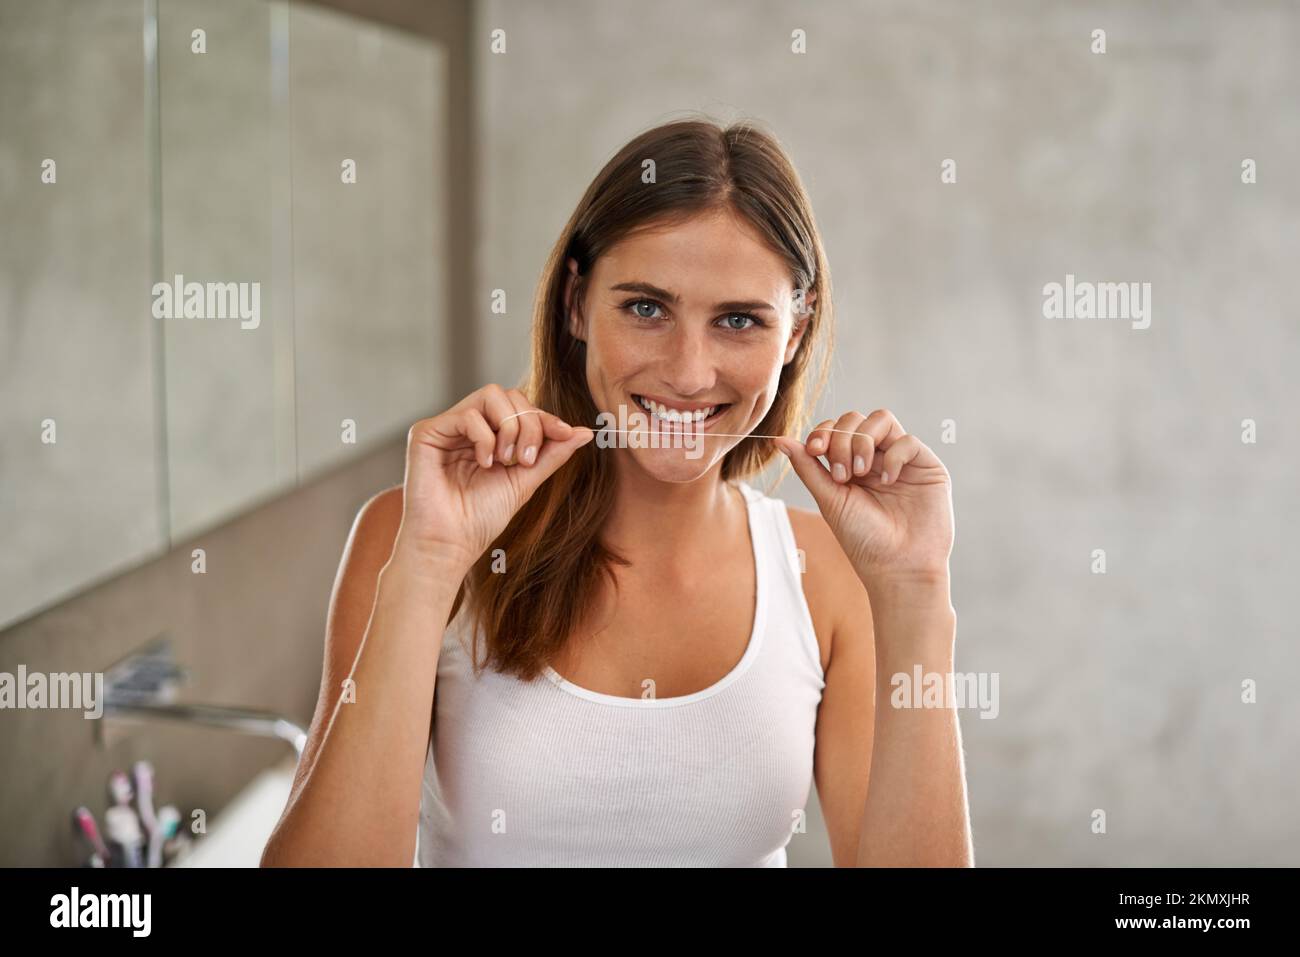 Ich werde eine Million Dollar Lächeln. Porträt einer jungen Frau, die im Bad Zahnseide benutzt. Stockfoto